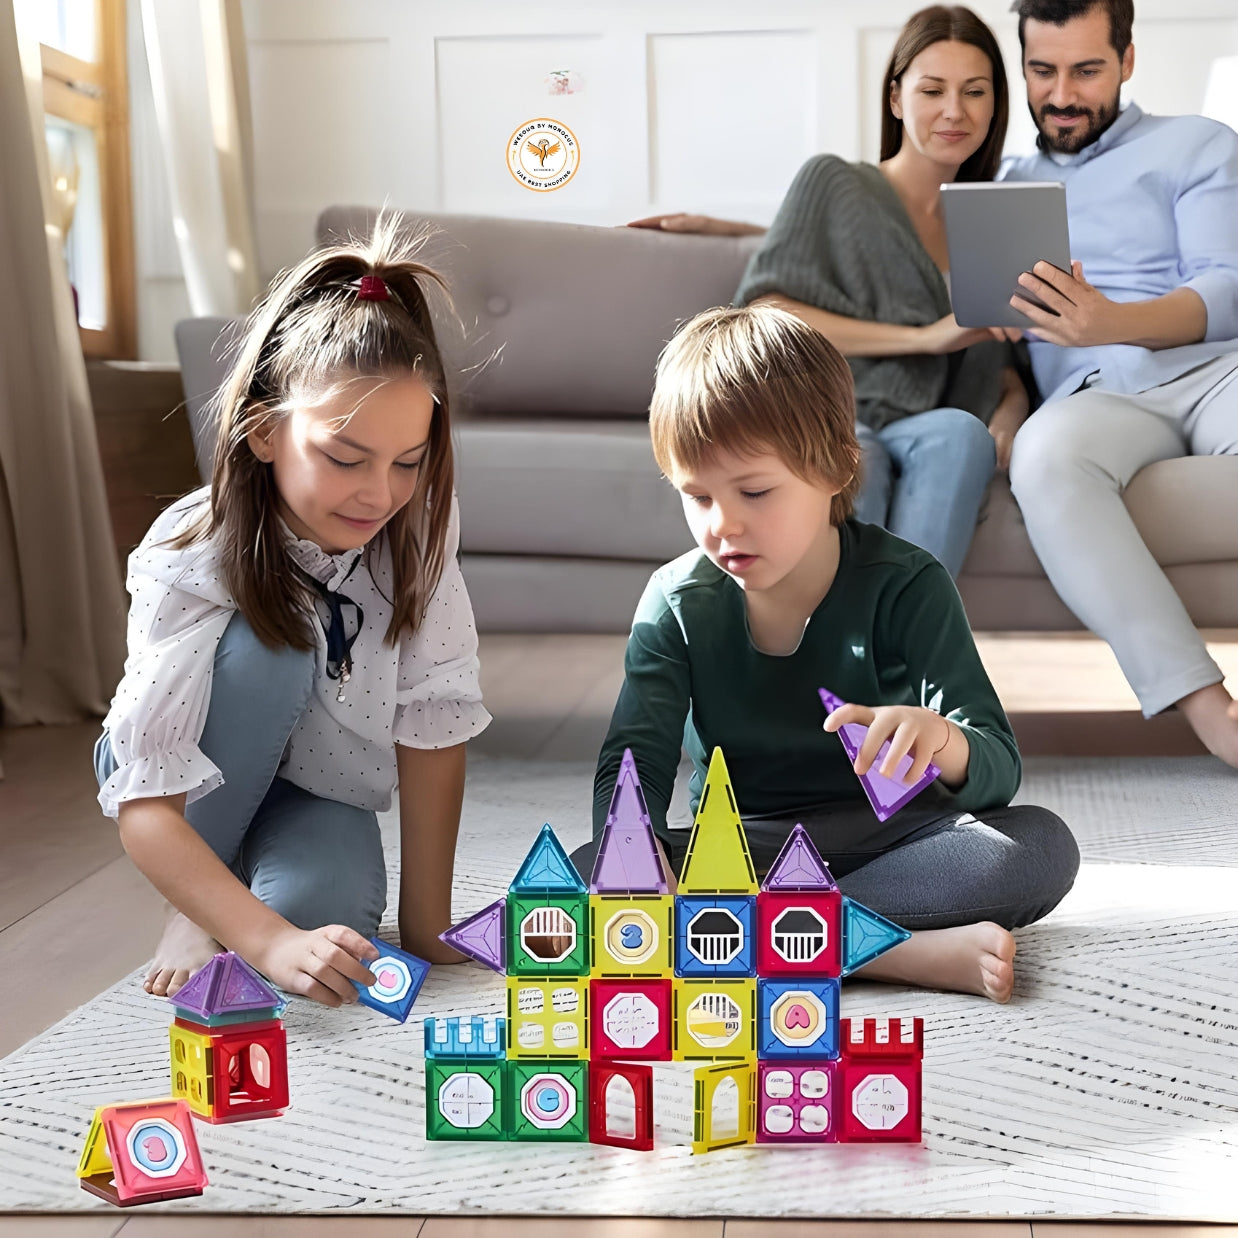 32 Pcs 3D Magnetic Tiles Set Toys for Kids , Building Blocks Construction, Magnetic tiles,